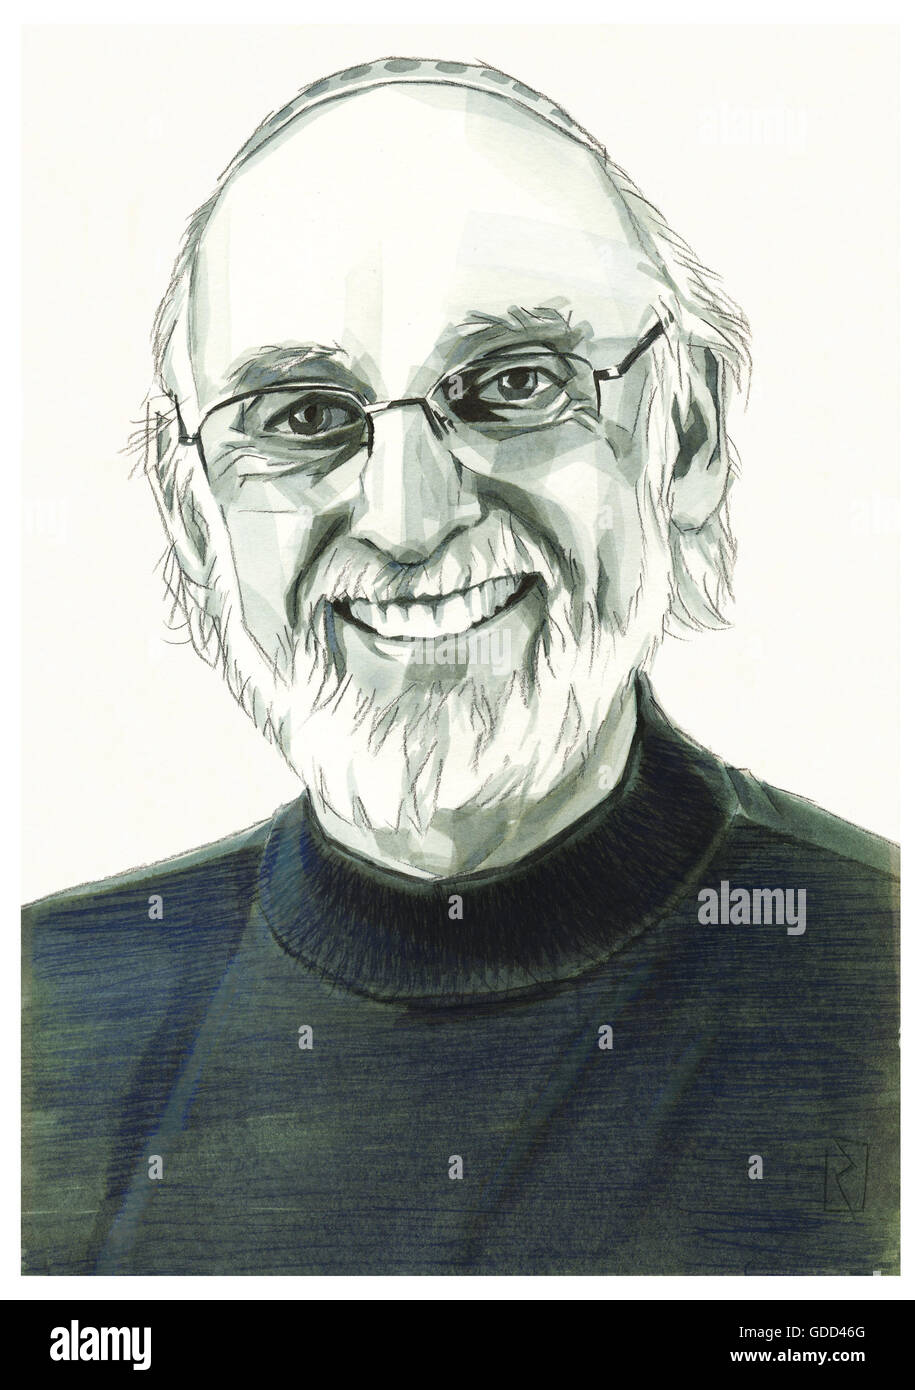 John Gottman, Mordechai, * 1942, American Scientist (psicólogo), retrato, dibujo monocromo por Jan Rieckhoff, 20.6.2007, Copyright del artista ya liquidados a través de INTERFOTO, ningún espacio adicional necesario Foto de stock